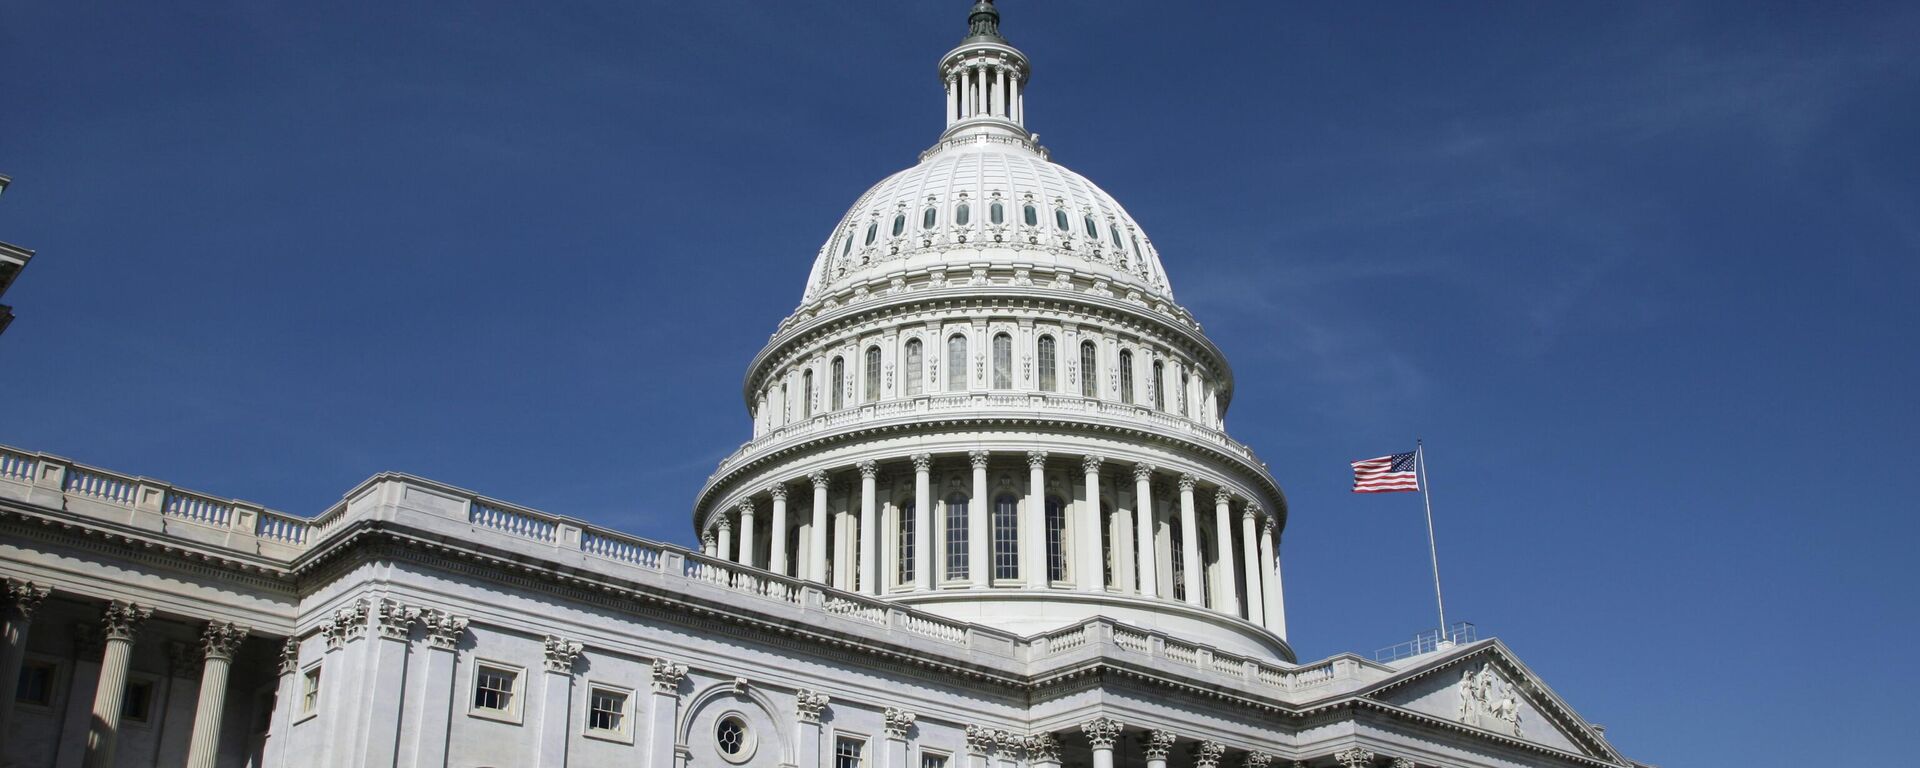 Купол Капитолия - здание конгресса США в Вашингтоне. - Sputnik Грузия, 1920, 03.11.2022